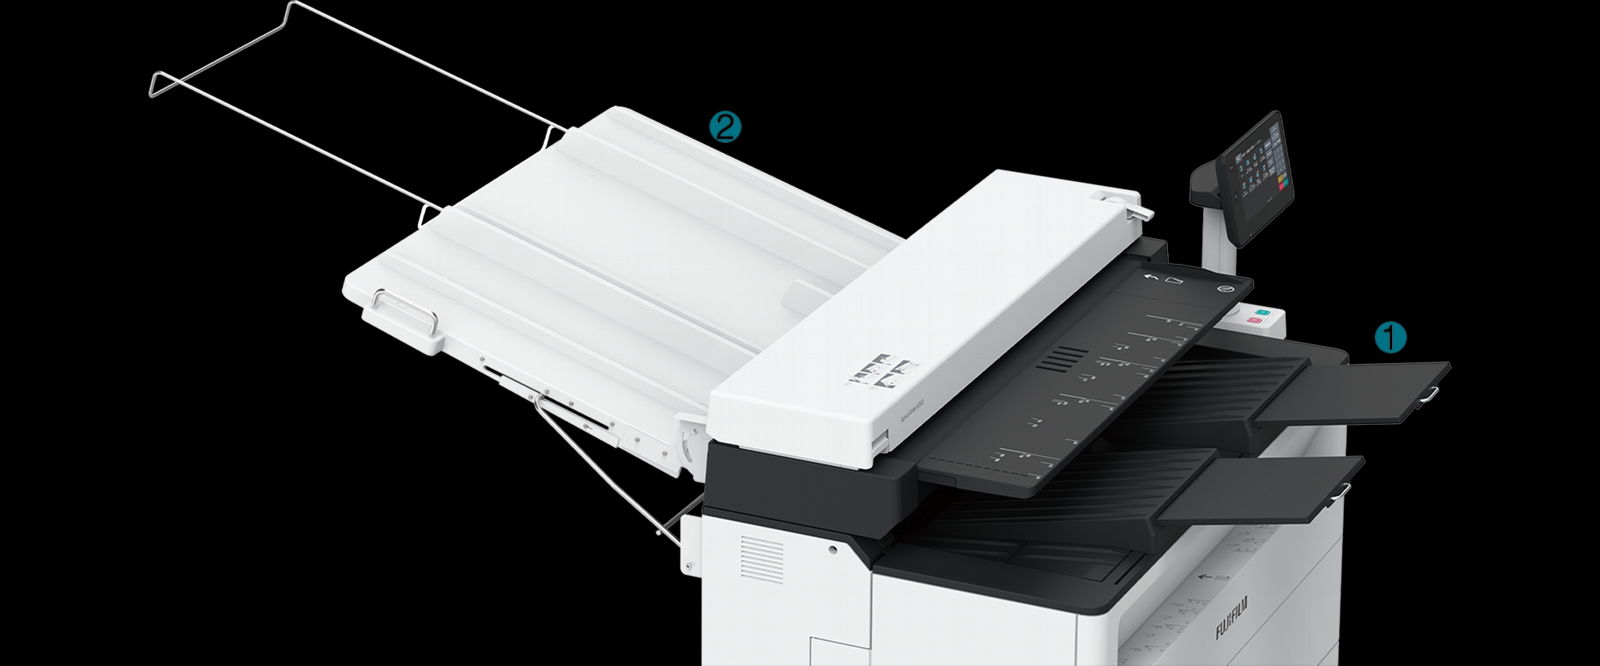 富士 AW6050   生产型图纸机/蓝图机 2